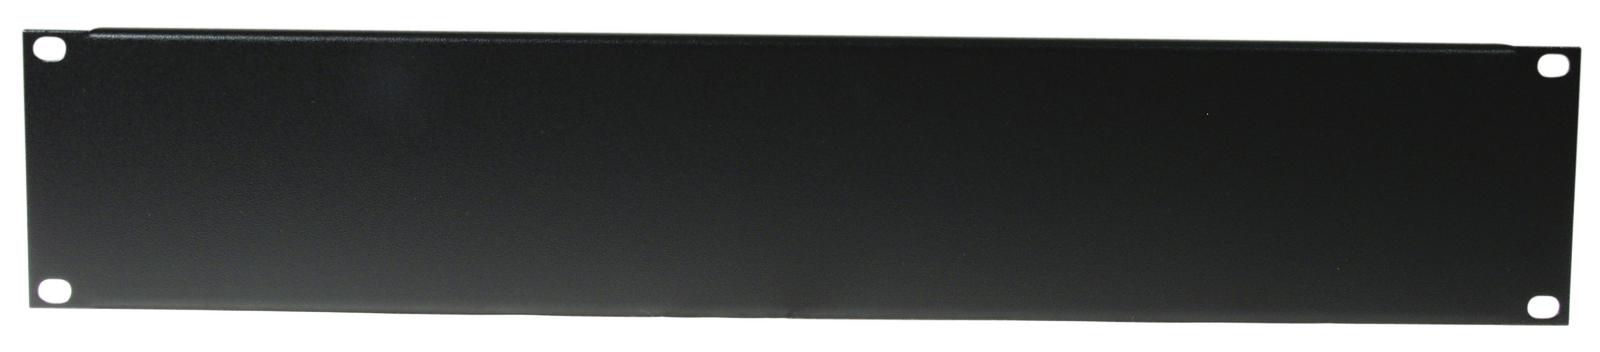 OMNITRONIC Frontplatte Z-19U, Stahl, schwarz 2HE